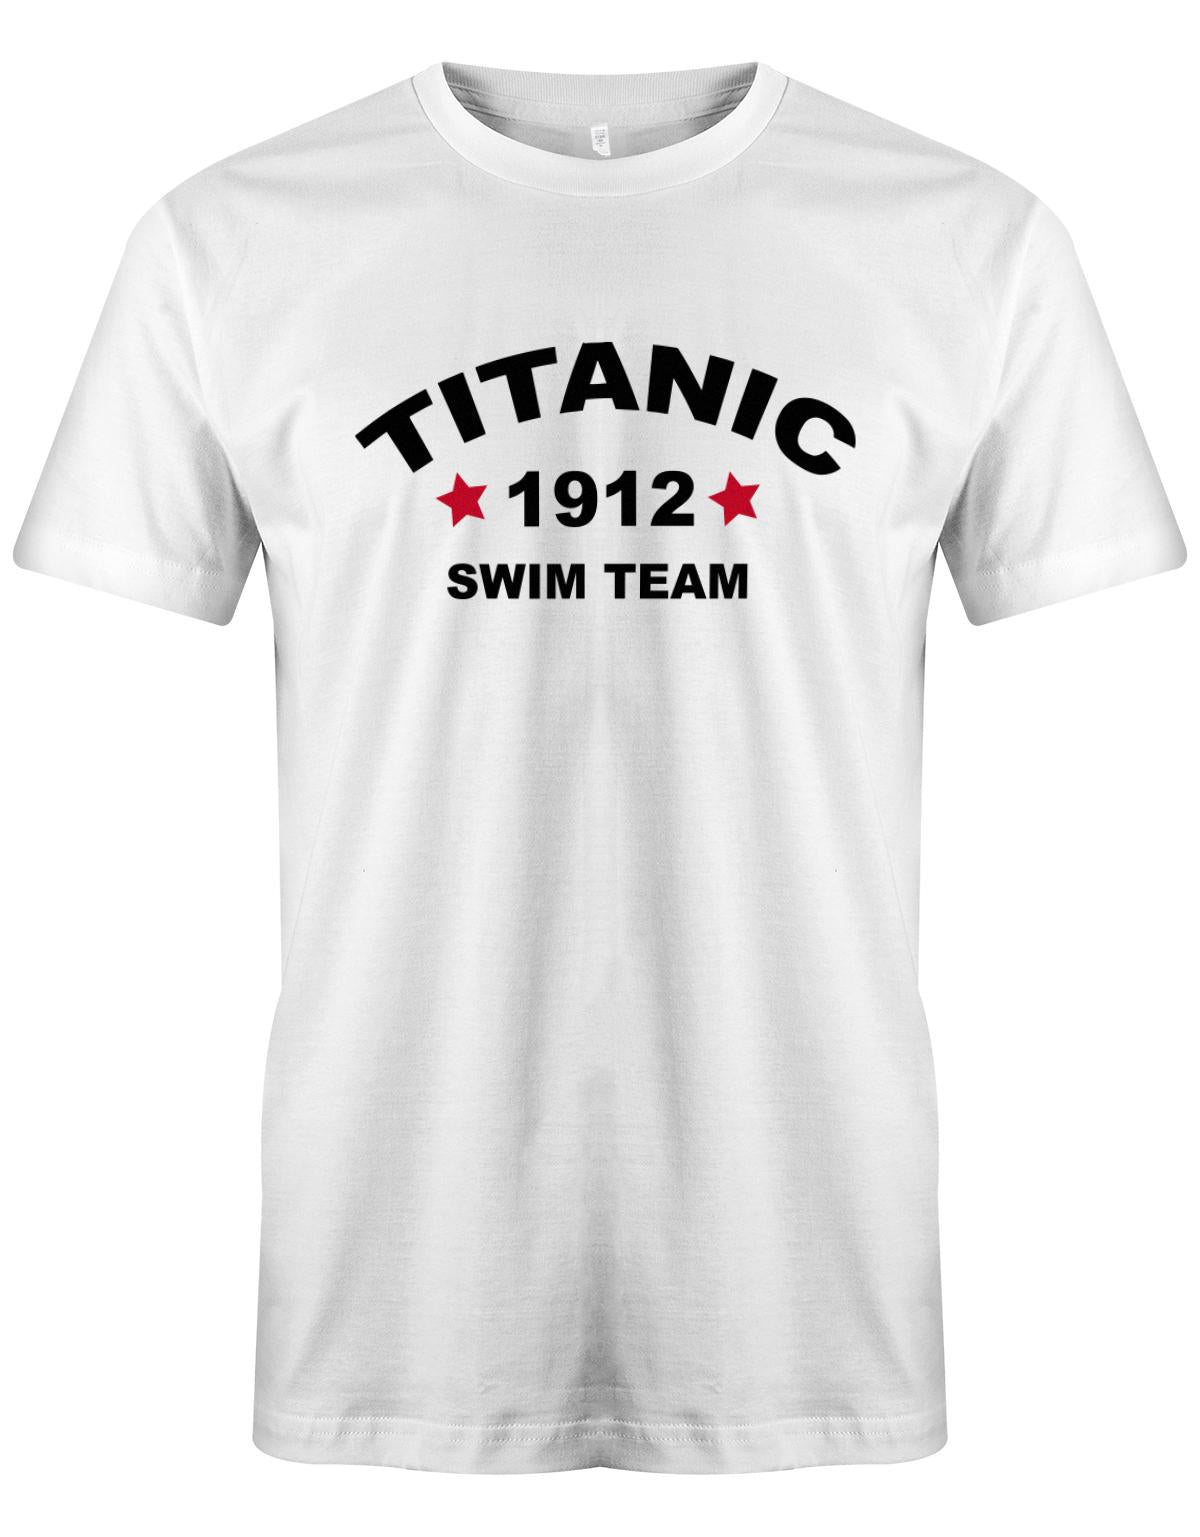 Titanic-1912-Swim-Team-Herren-Shirt-Weiss